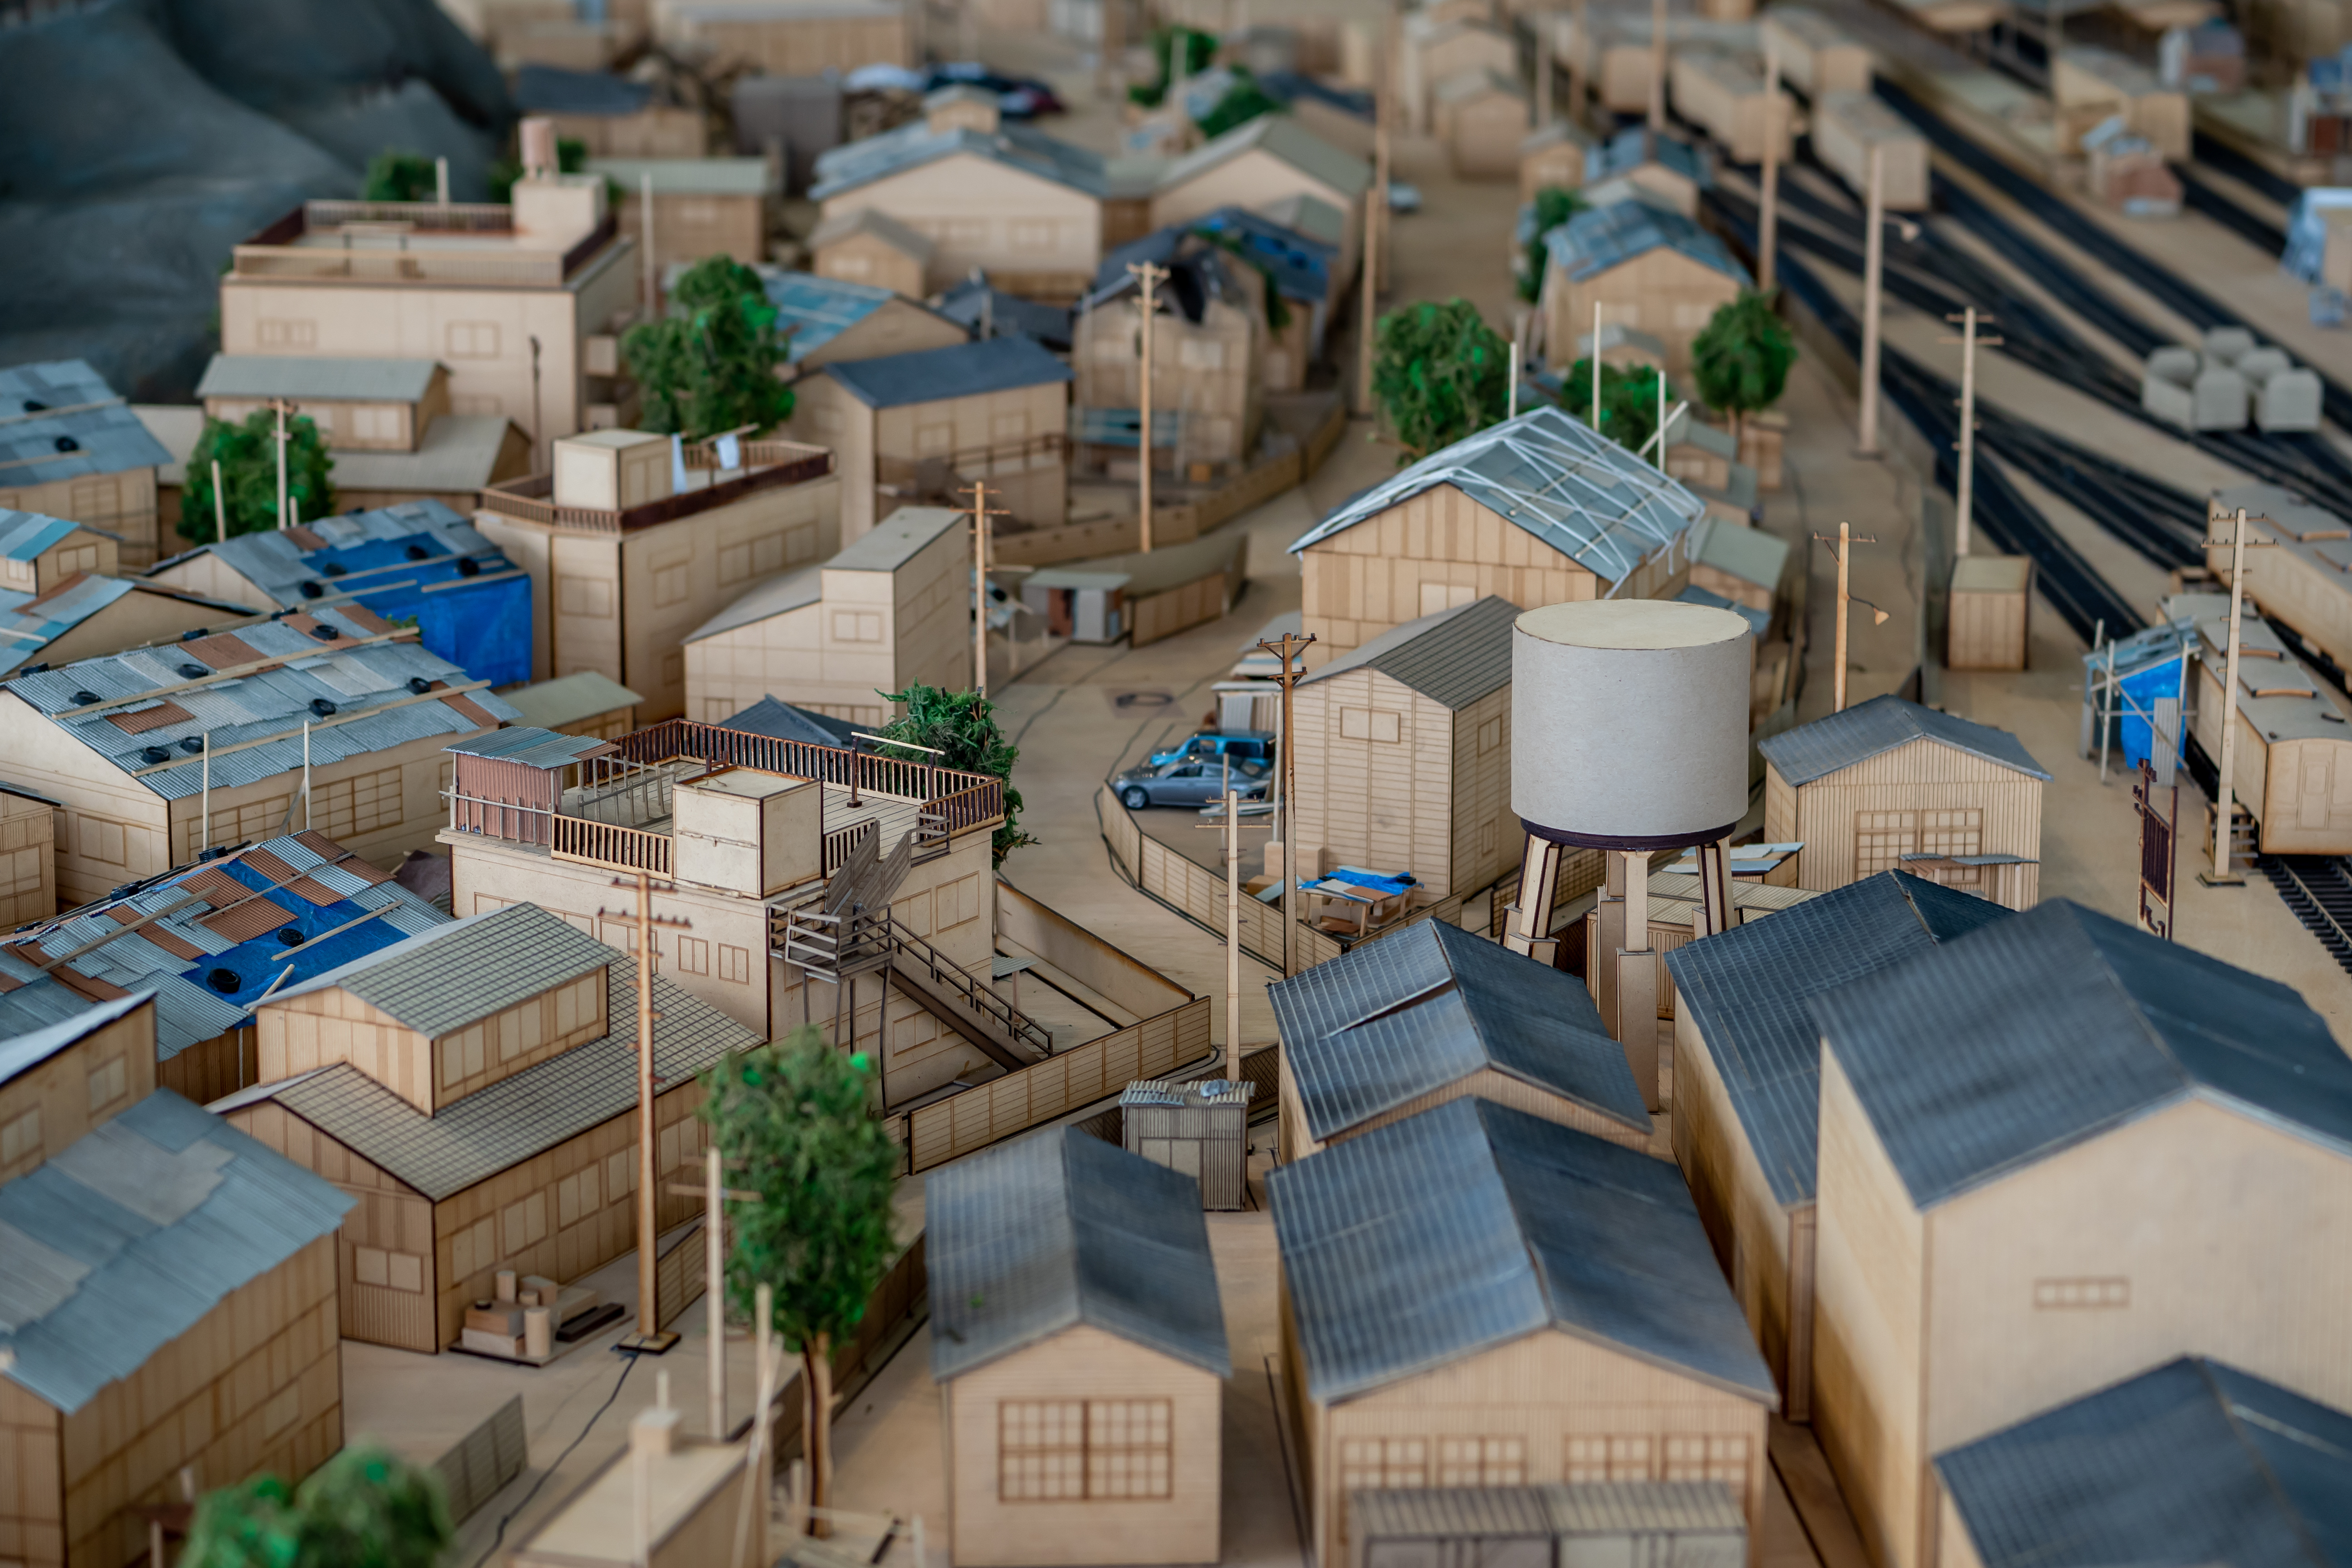 シン・エヴァンゲリオン制作に使われた「第3村」模型が公開中の 